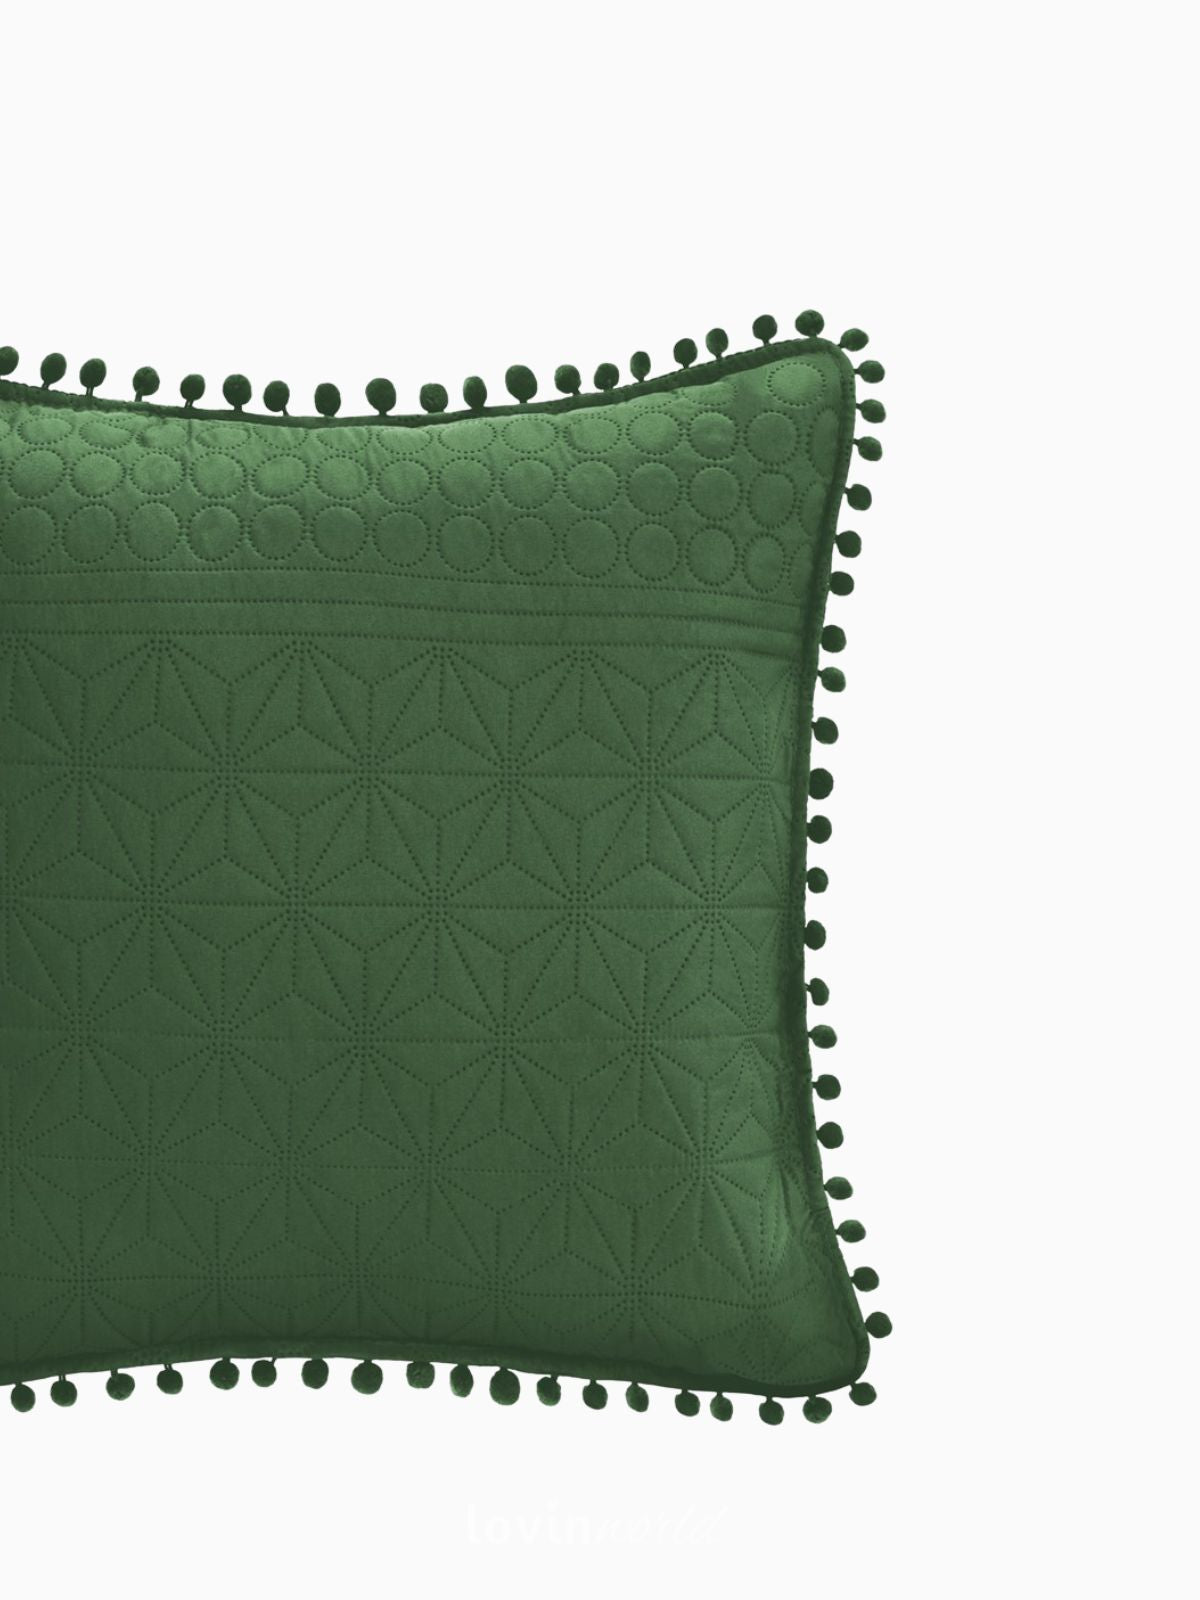 Cuscino decorativo Meadore in colore verde 45x45 cm.-3